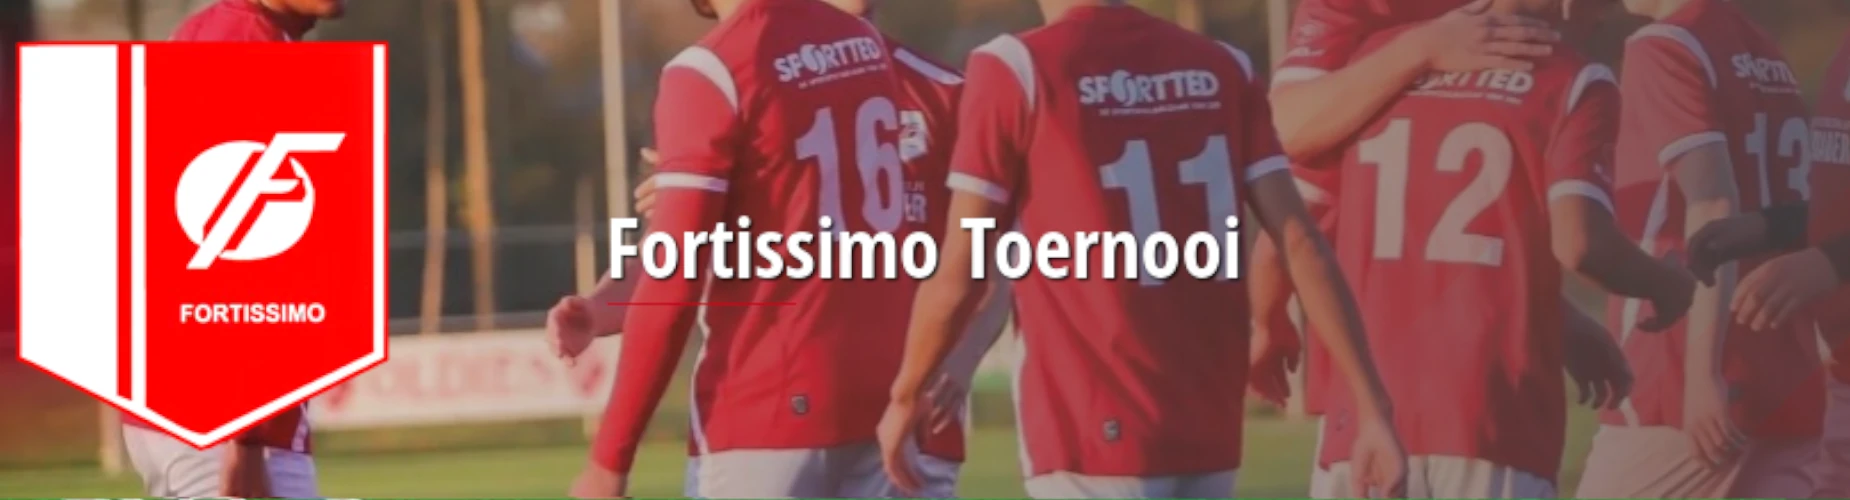 Banner - JO15 - Fortissimo Toernooi - KSV Fortissimo - Ede